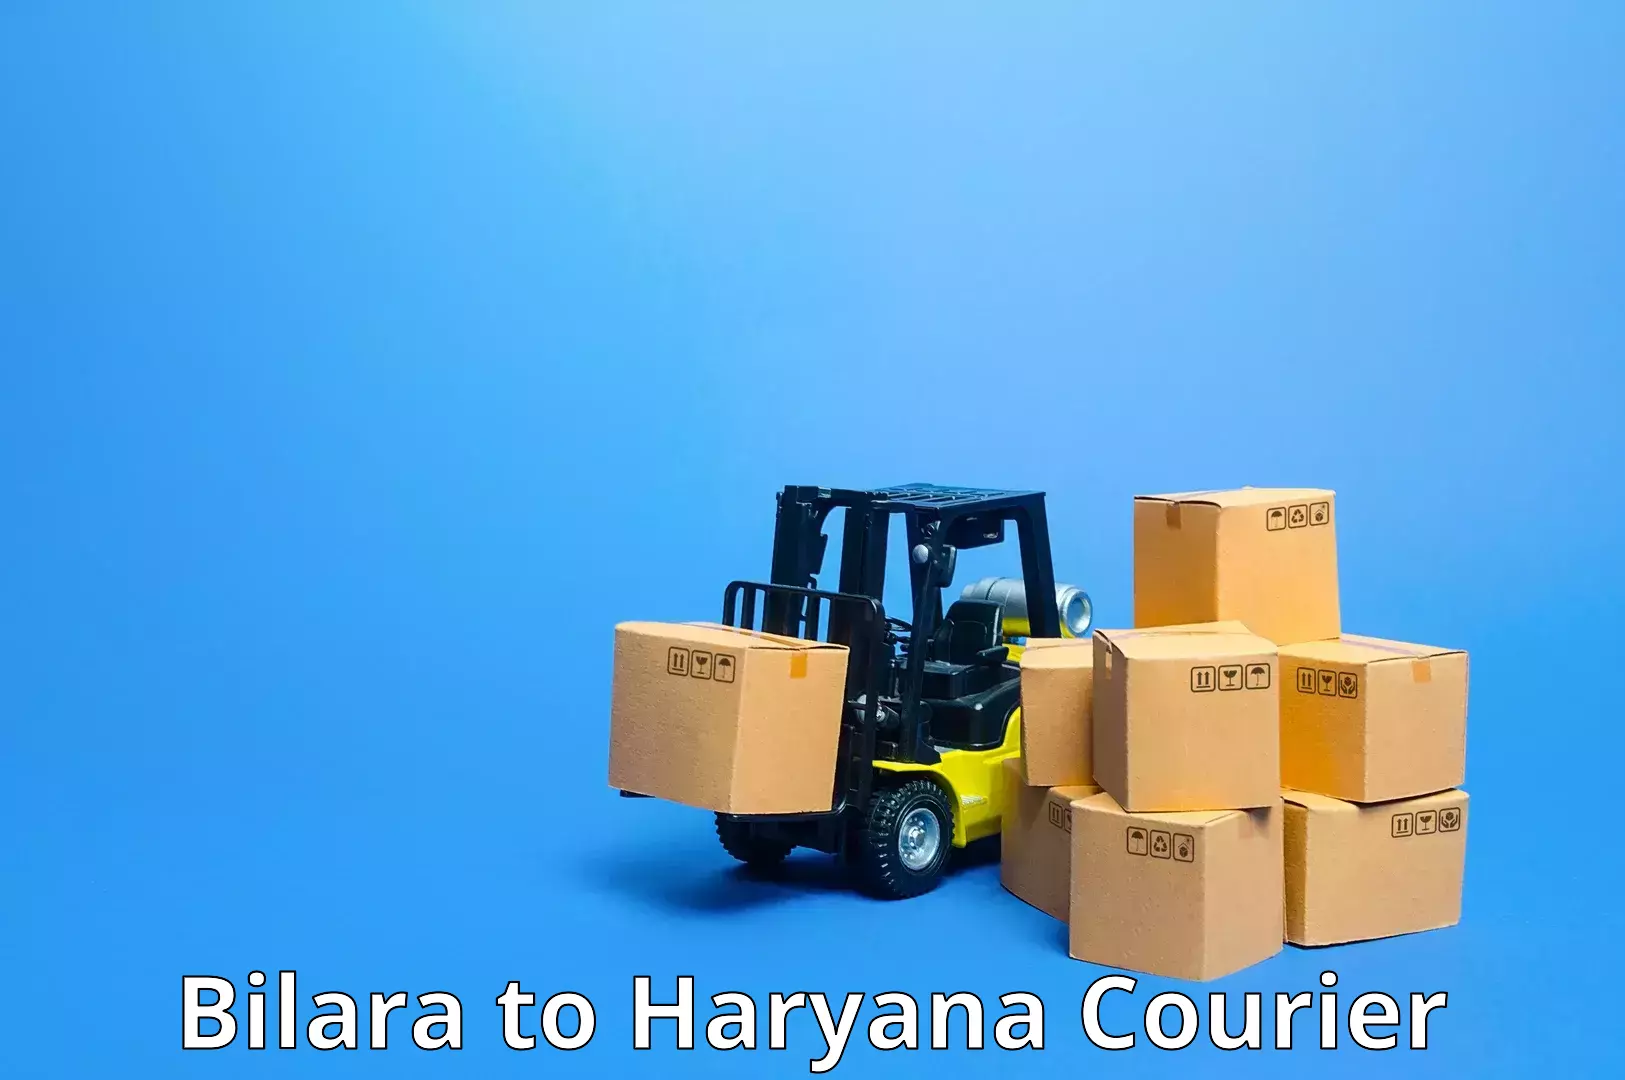 Express delivery capabilities Bilara to Hisar